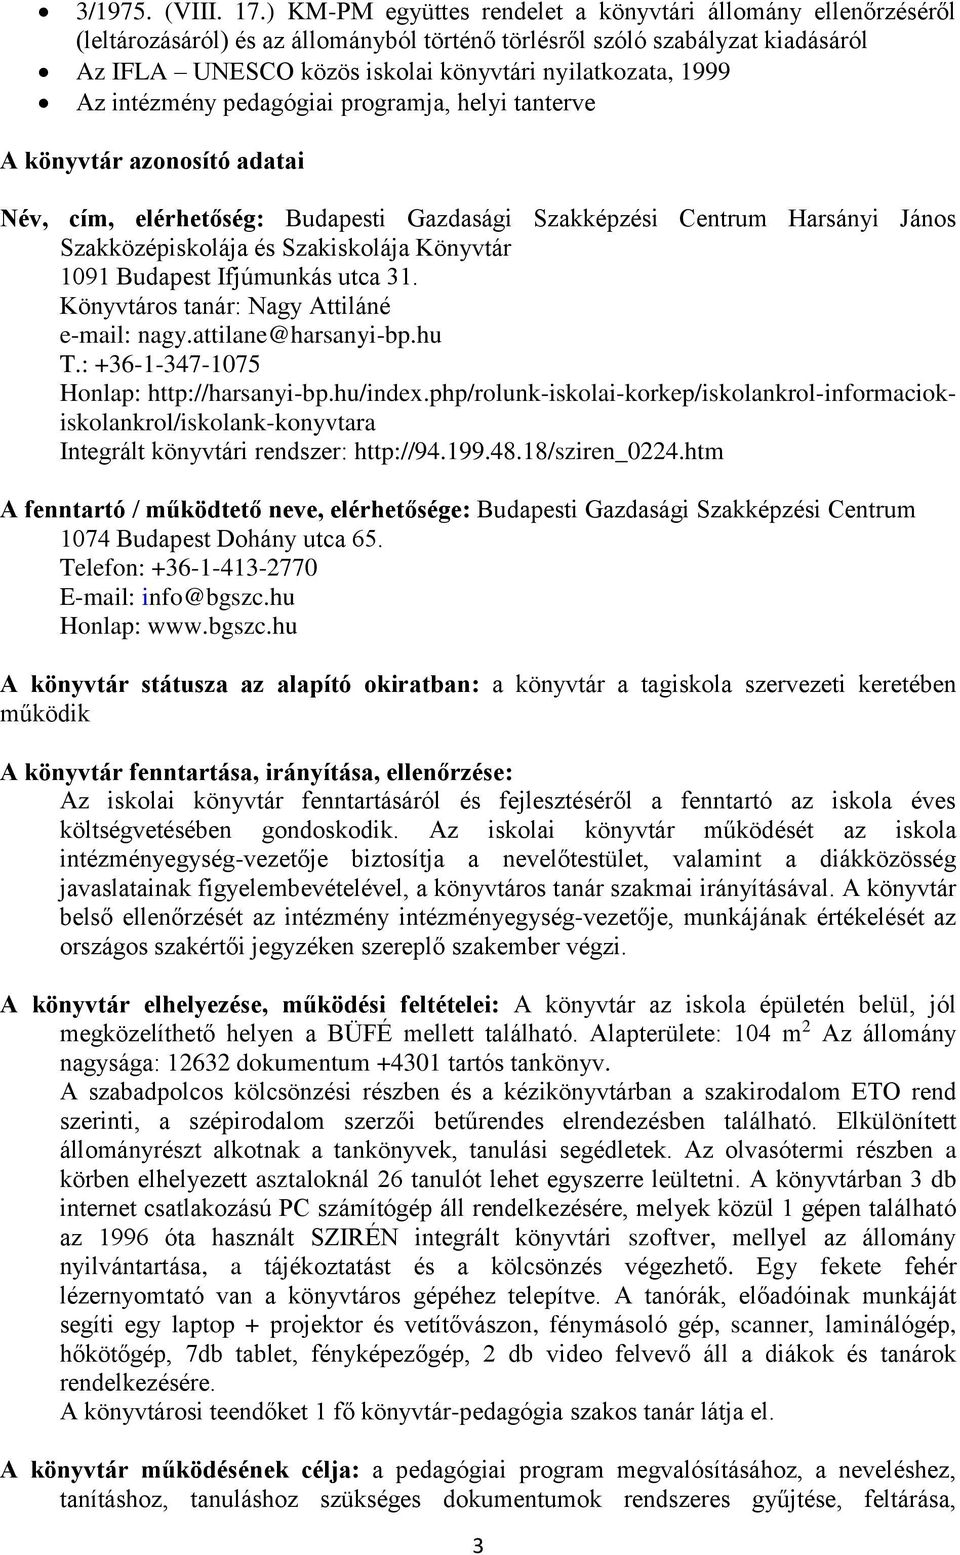 1999 Az intézmény pedagógiai programja, helyi tanterve A könyvtár azonosító adatai Név, cím, elérhetőség: Budapesti Gazdasági Szakképzési Centrum Harsányi János Szakközépiskolája és Szakiskolája